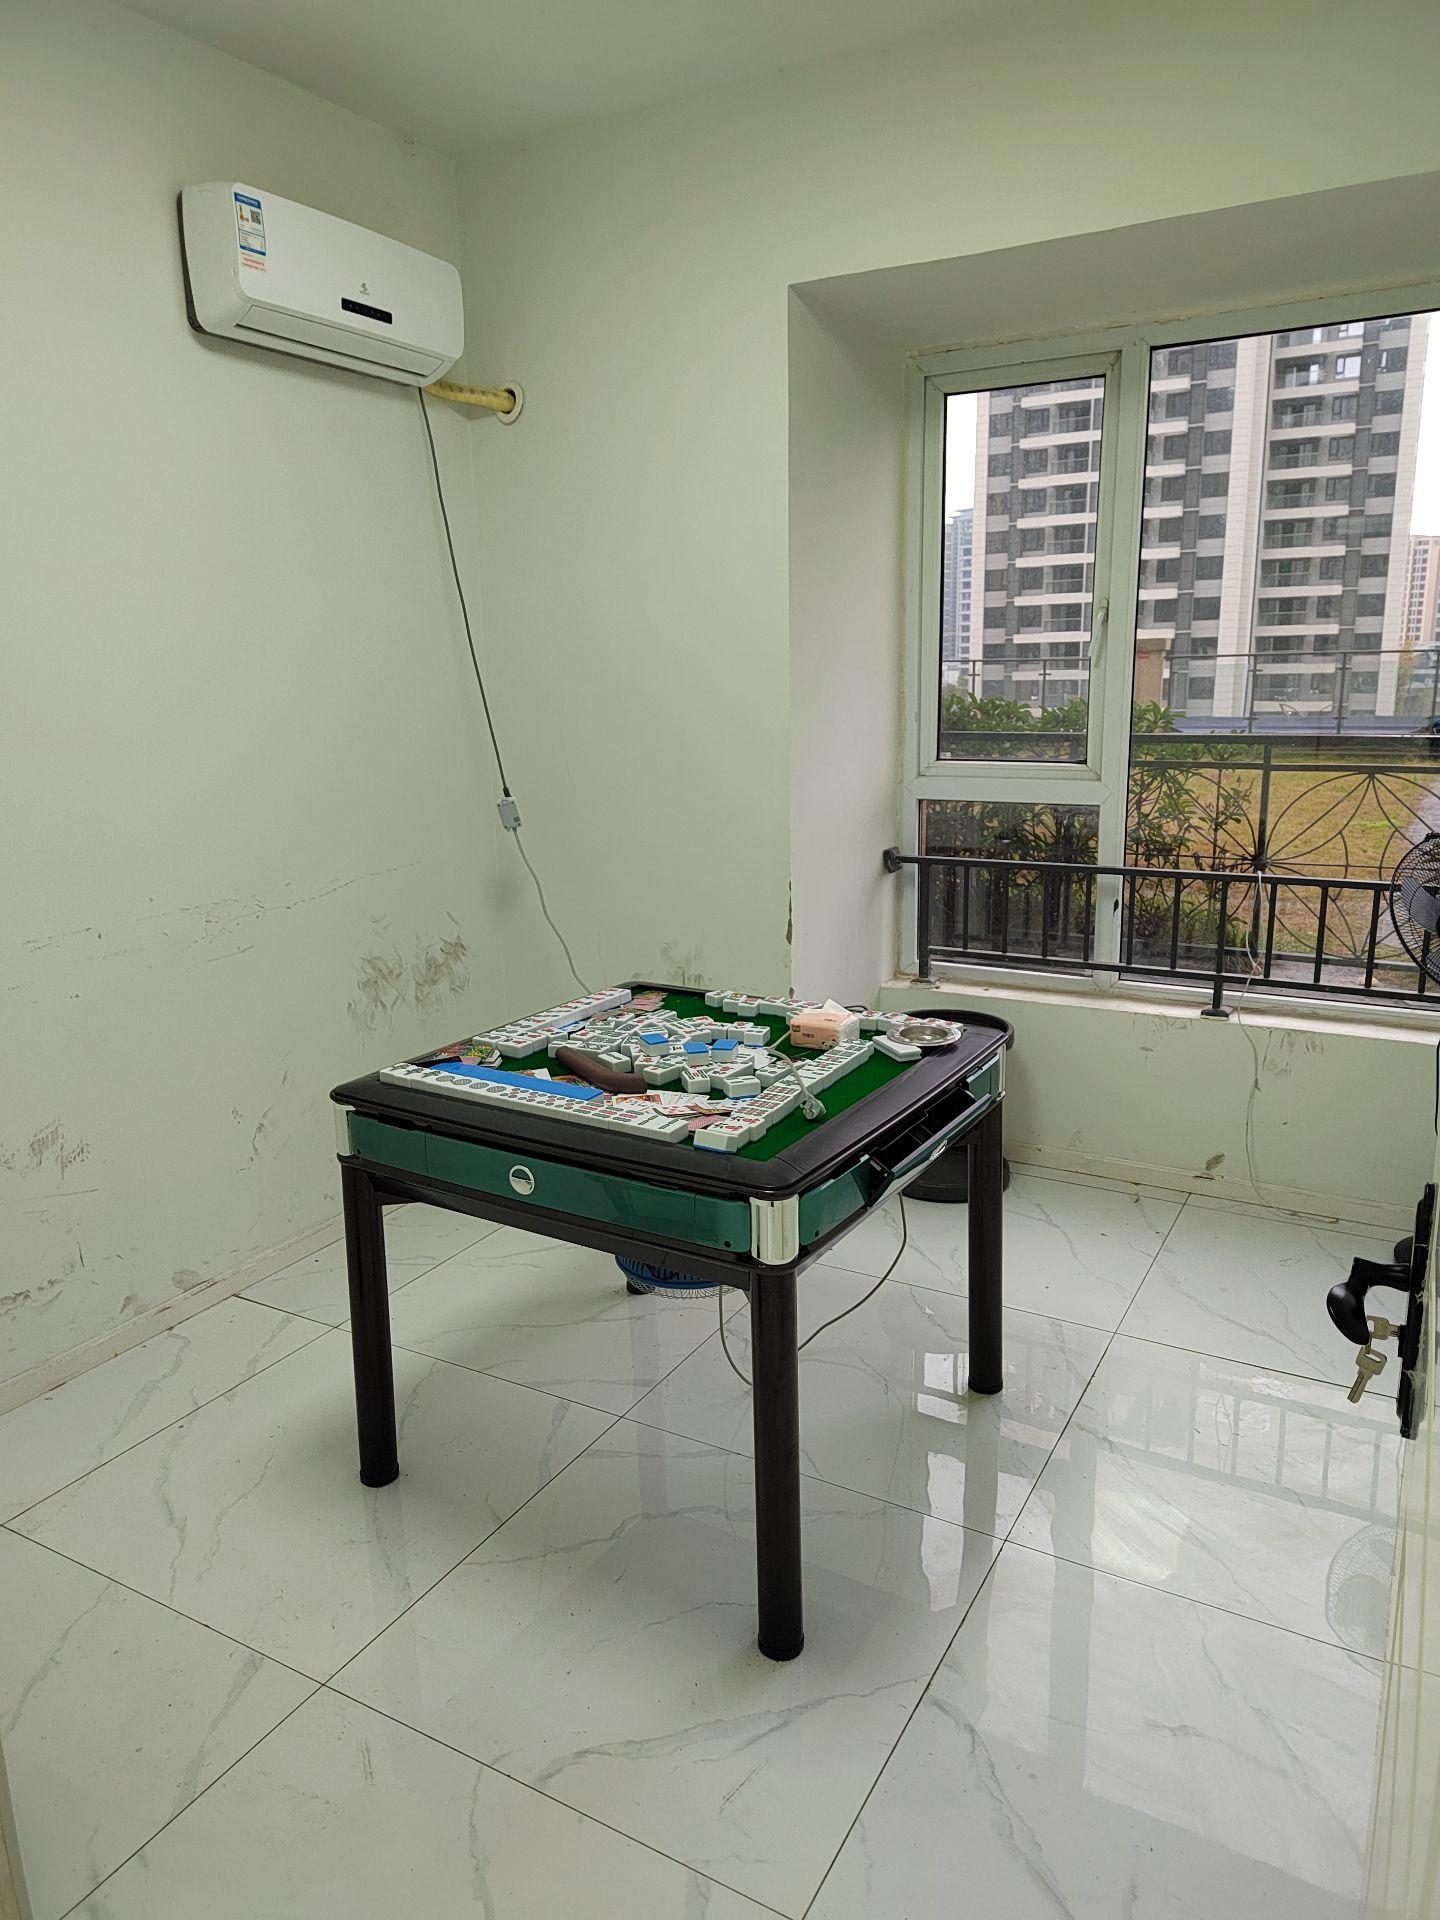 出租邦泰国际社区 北区 3室2厅1卫90平米2000元/月住宅